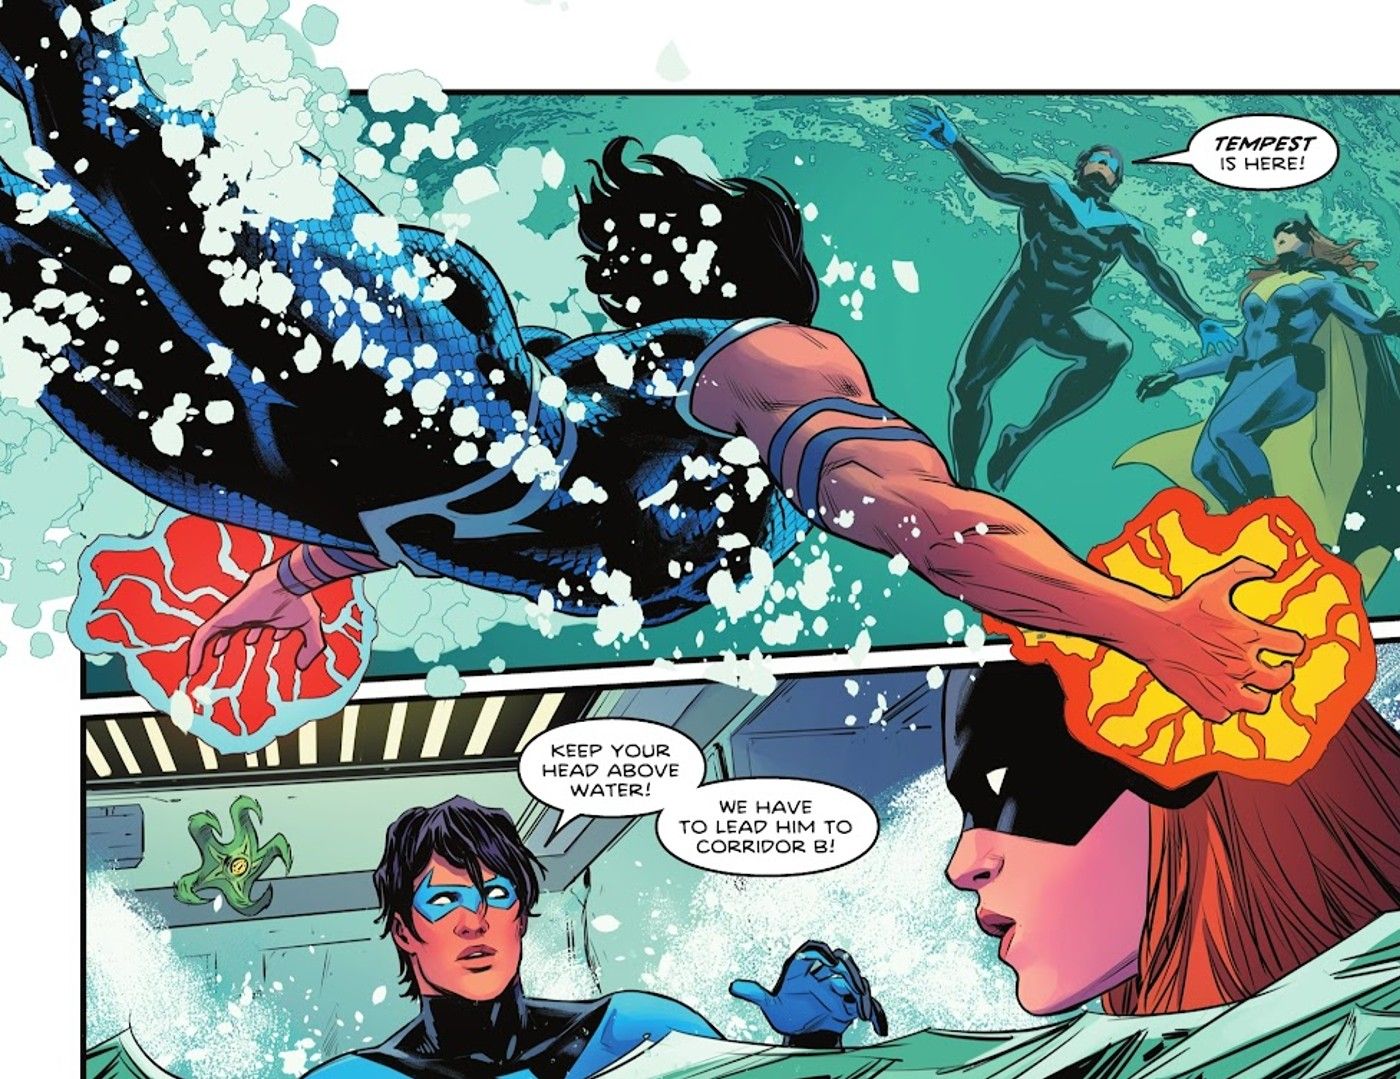 Comic book panels: Costumed superheroes in water.